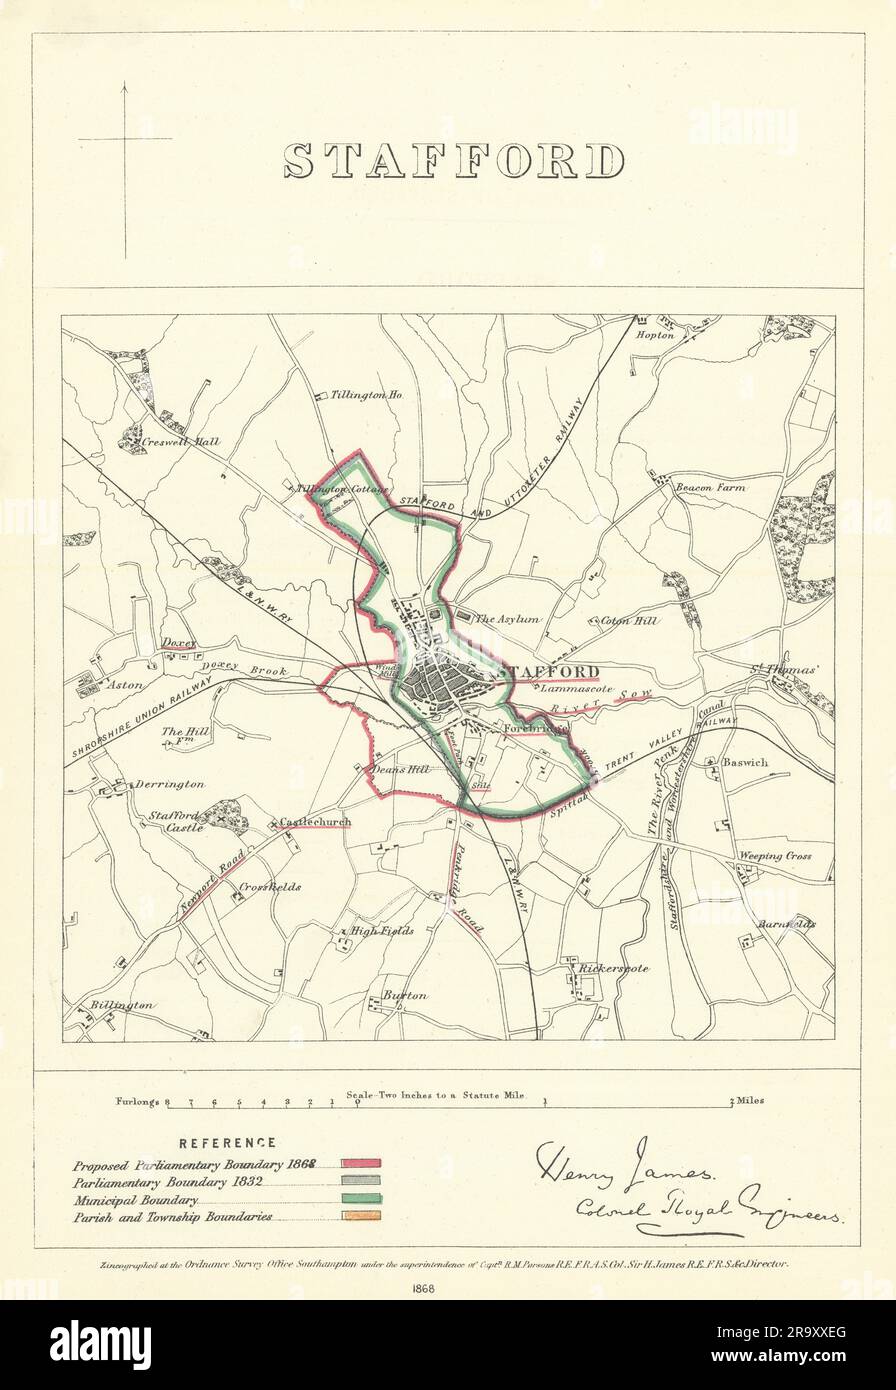 Stafford, Staffordshire. JAMES. Comisión de Límites Parlamentarios 1868 mapa antiguo Foto de stock